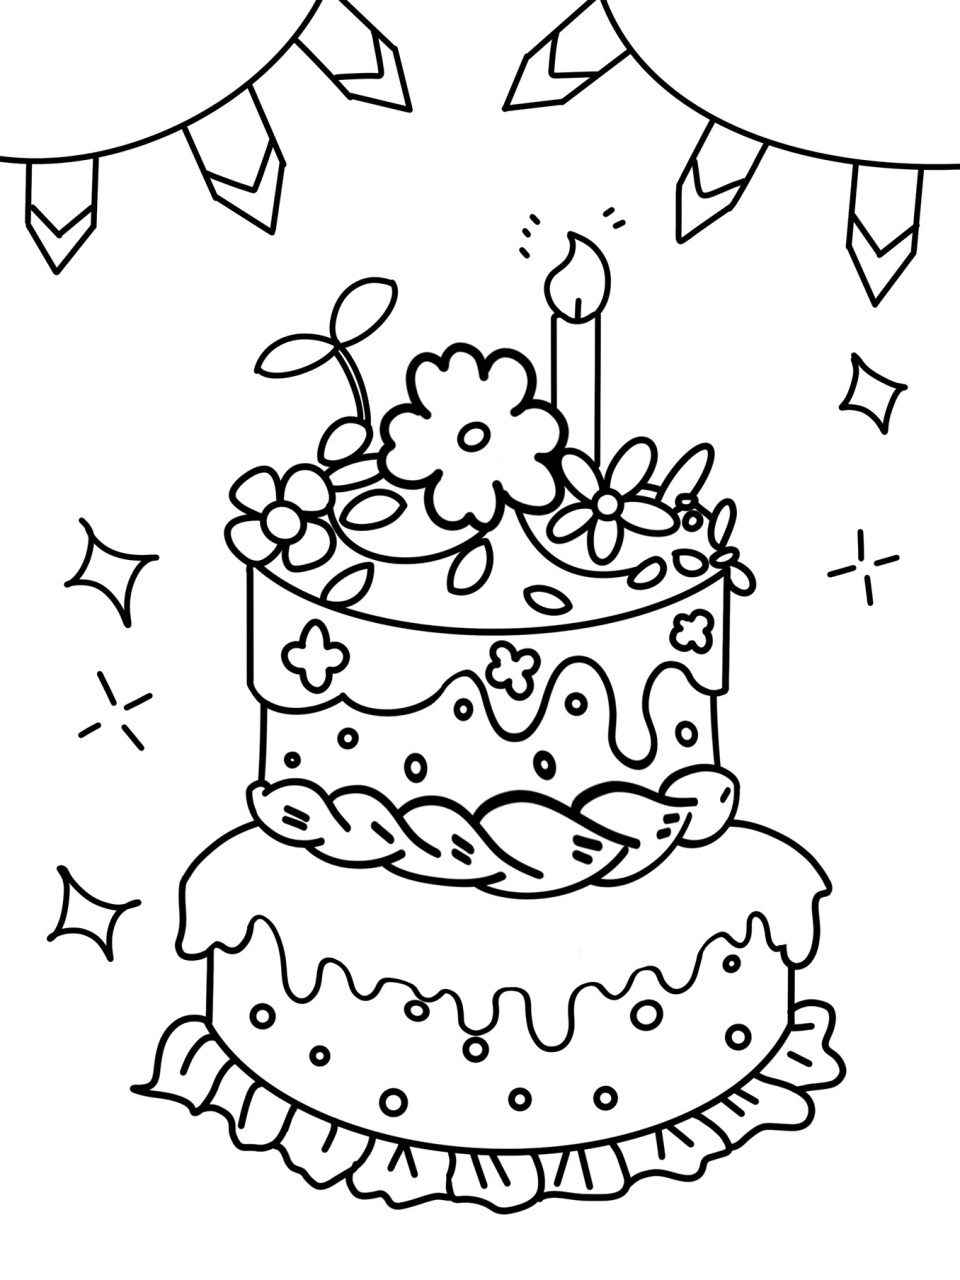 18岁生日蛋糕简笔画图片